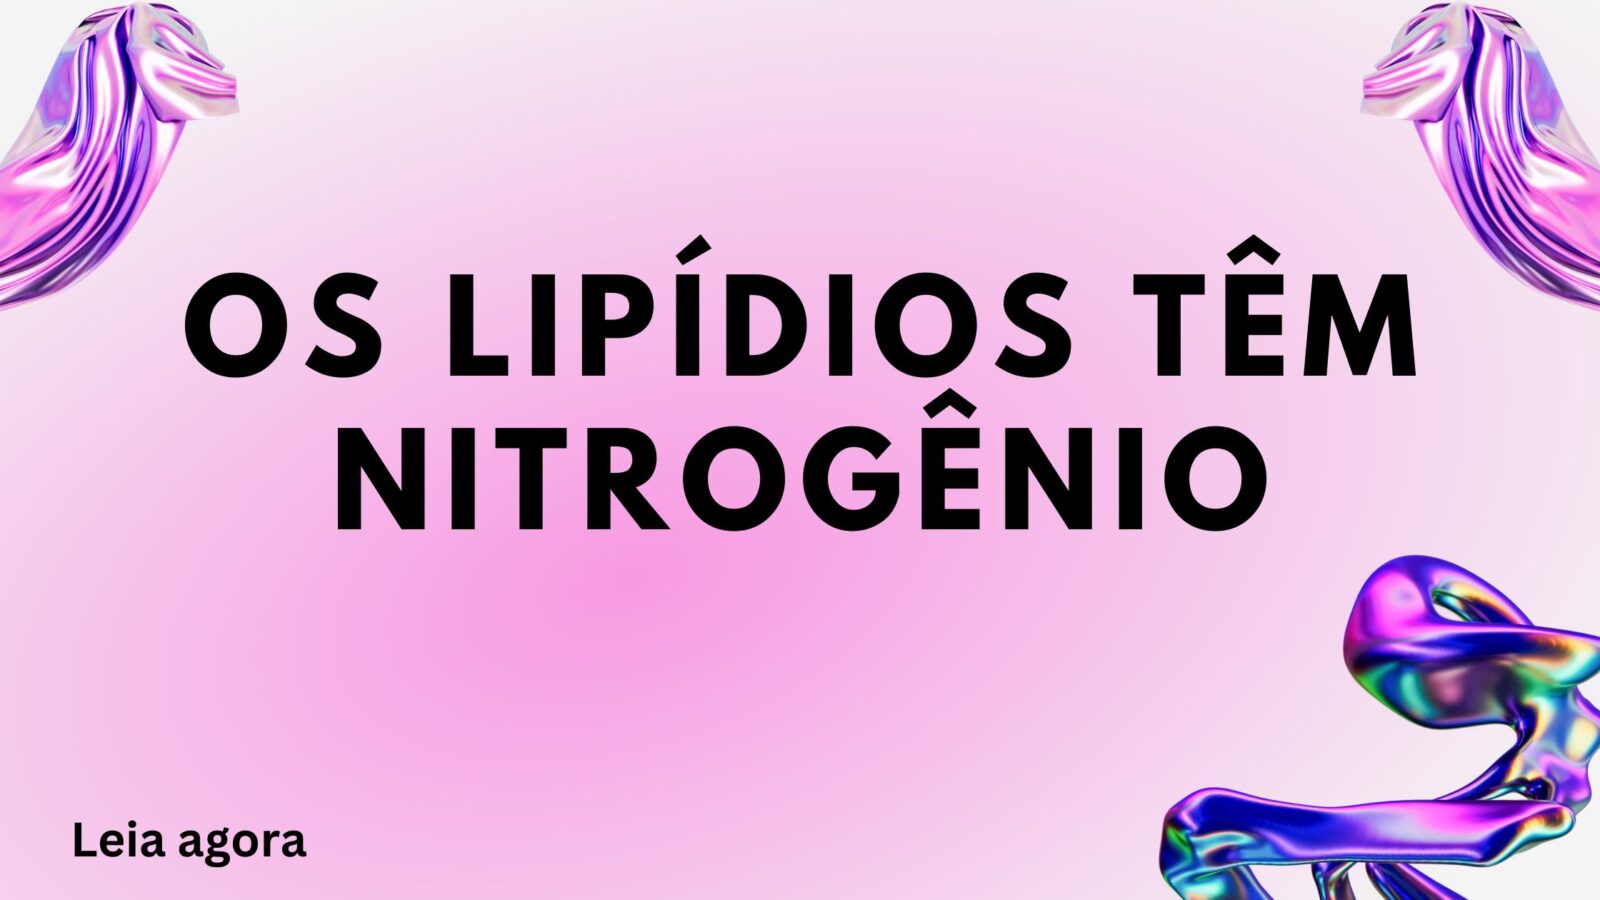 Os lipídios têm nitrogênio